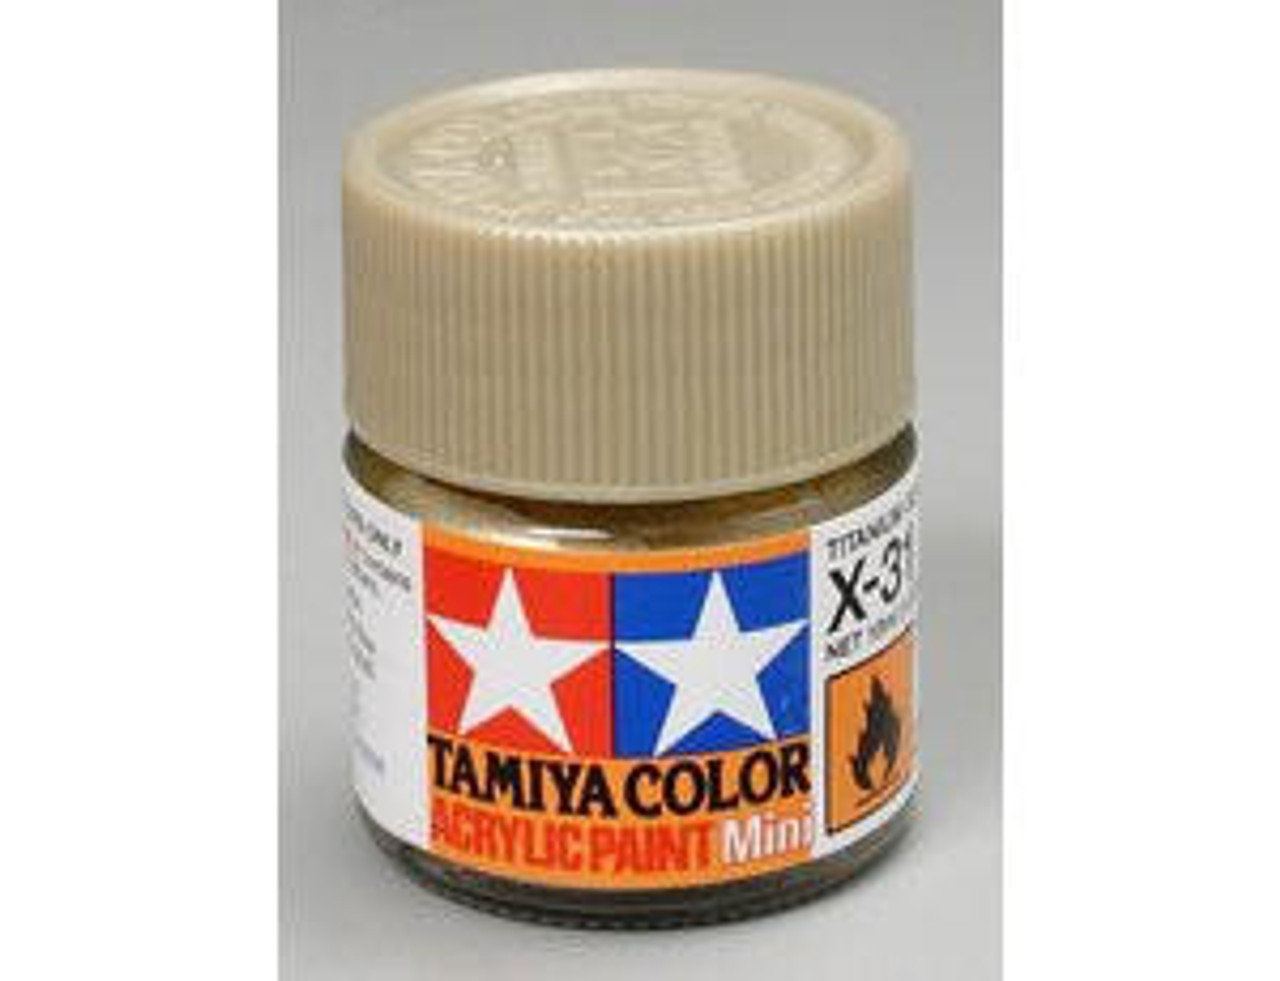 Tamiya Acrylic x12 Gloss,Gold Leaf